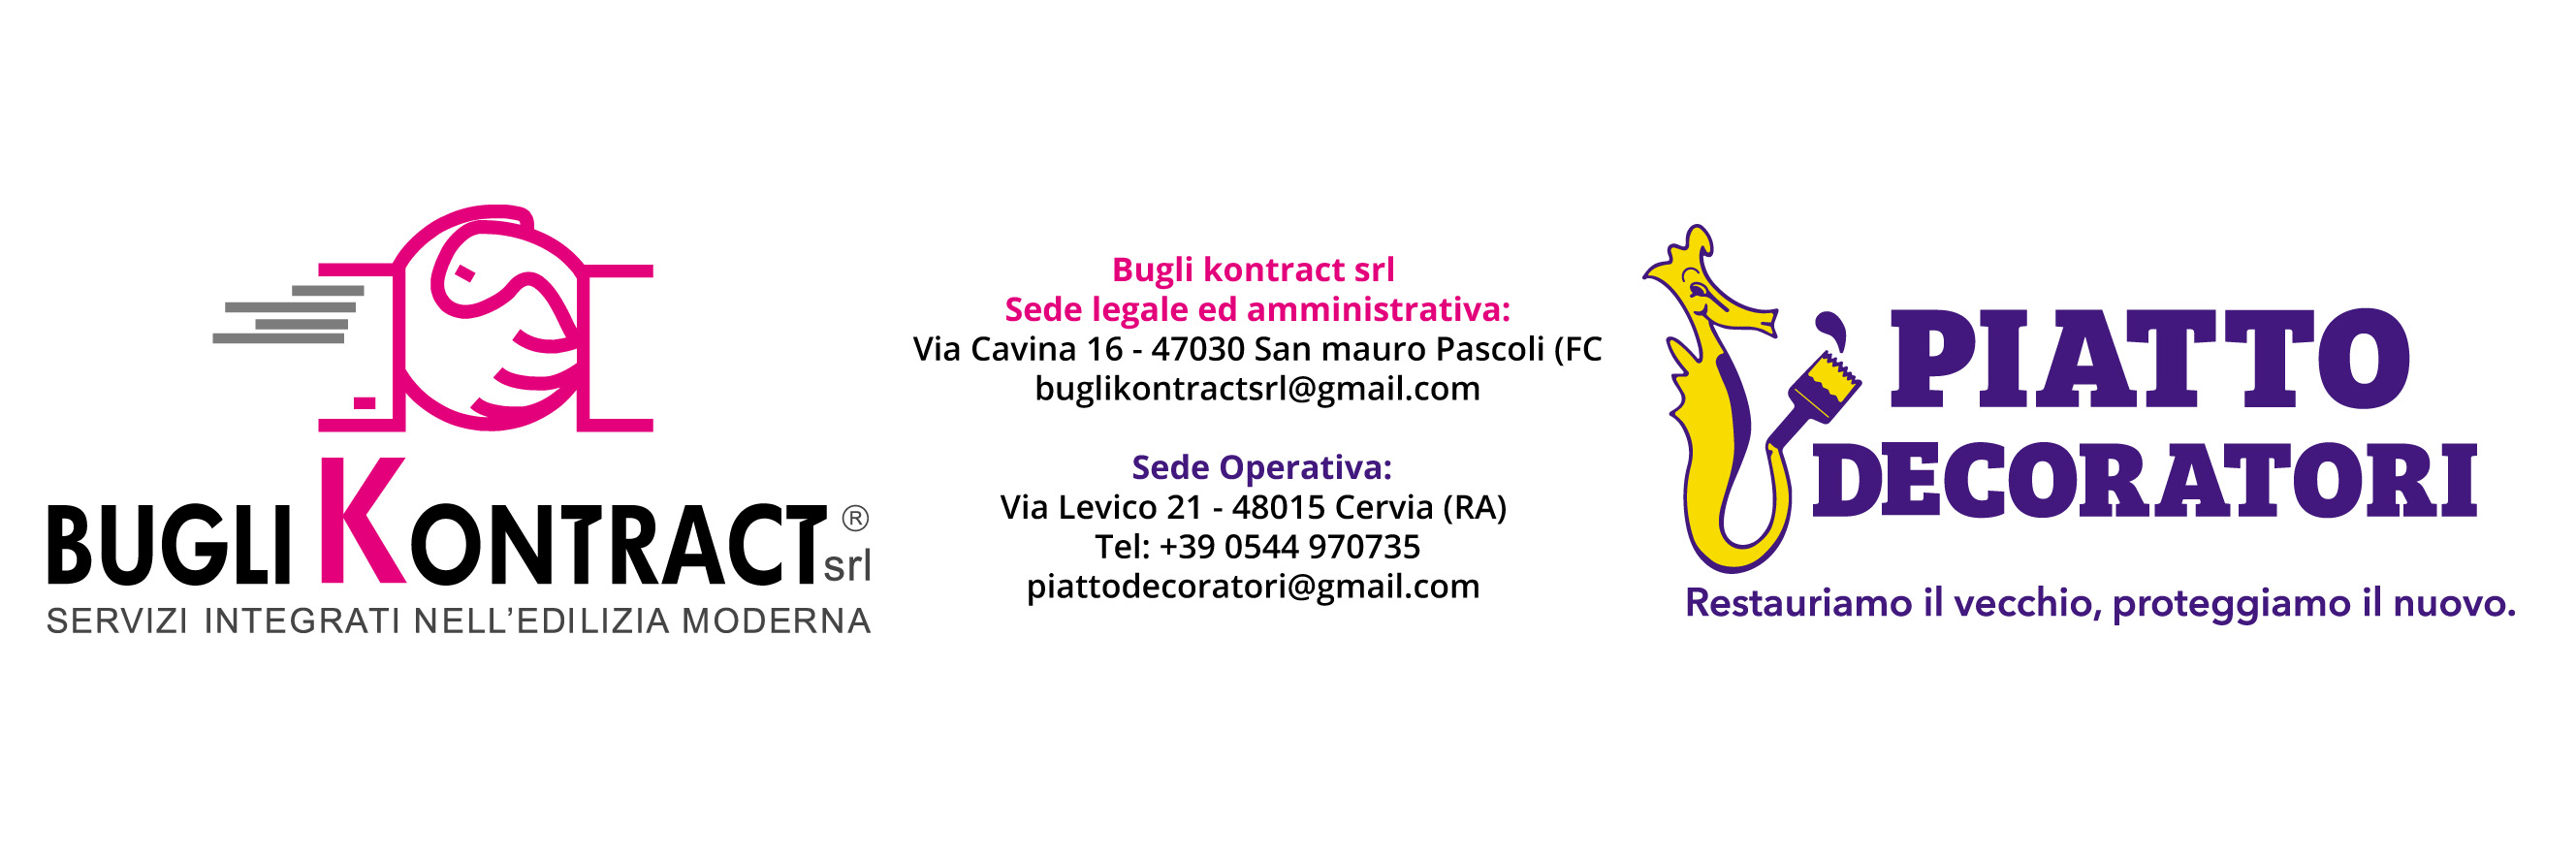 Bugli Kontract Srl - Piatto Decoratori